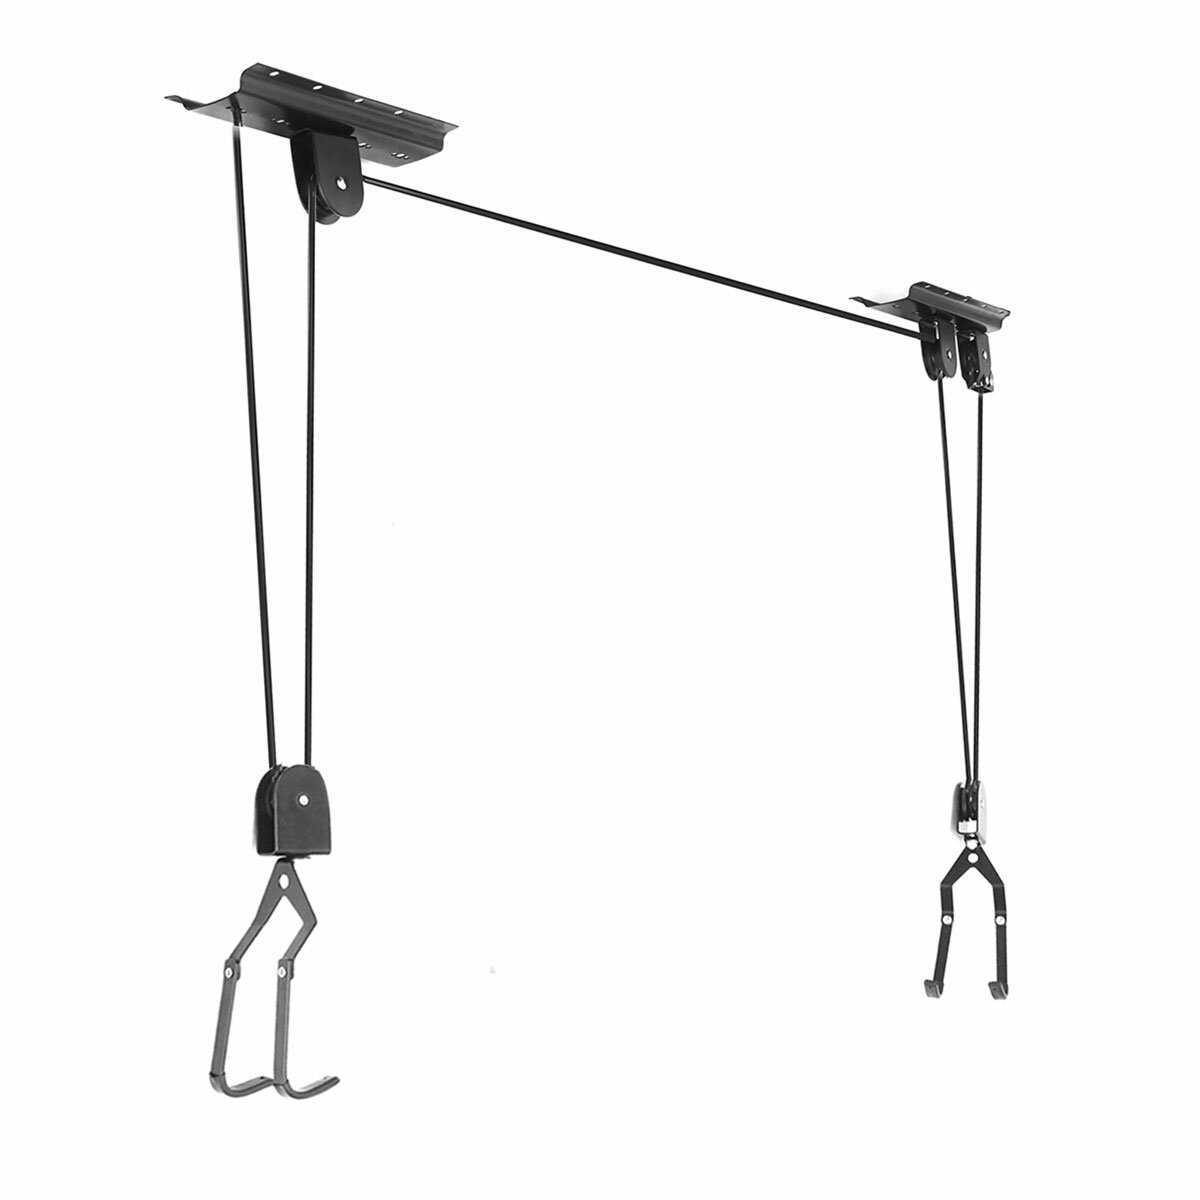 25/50/60kg Hanger Hoist Lift Katrol Systeem Kraan voor Fiets/Rubber Boot/Kajak/Surfboard/Kano